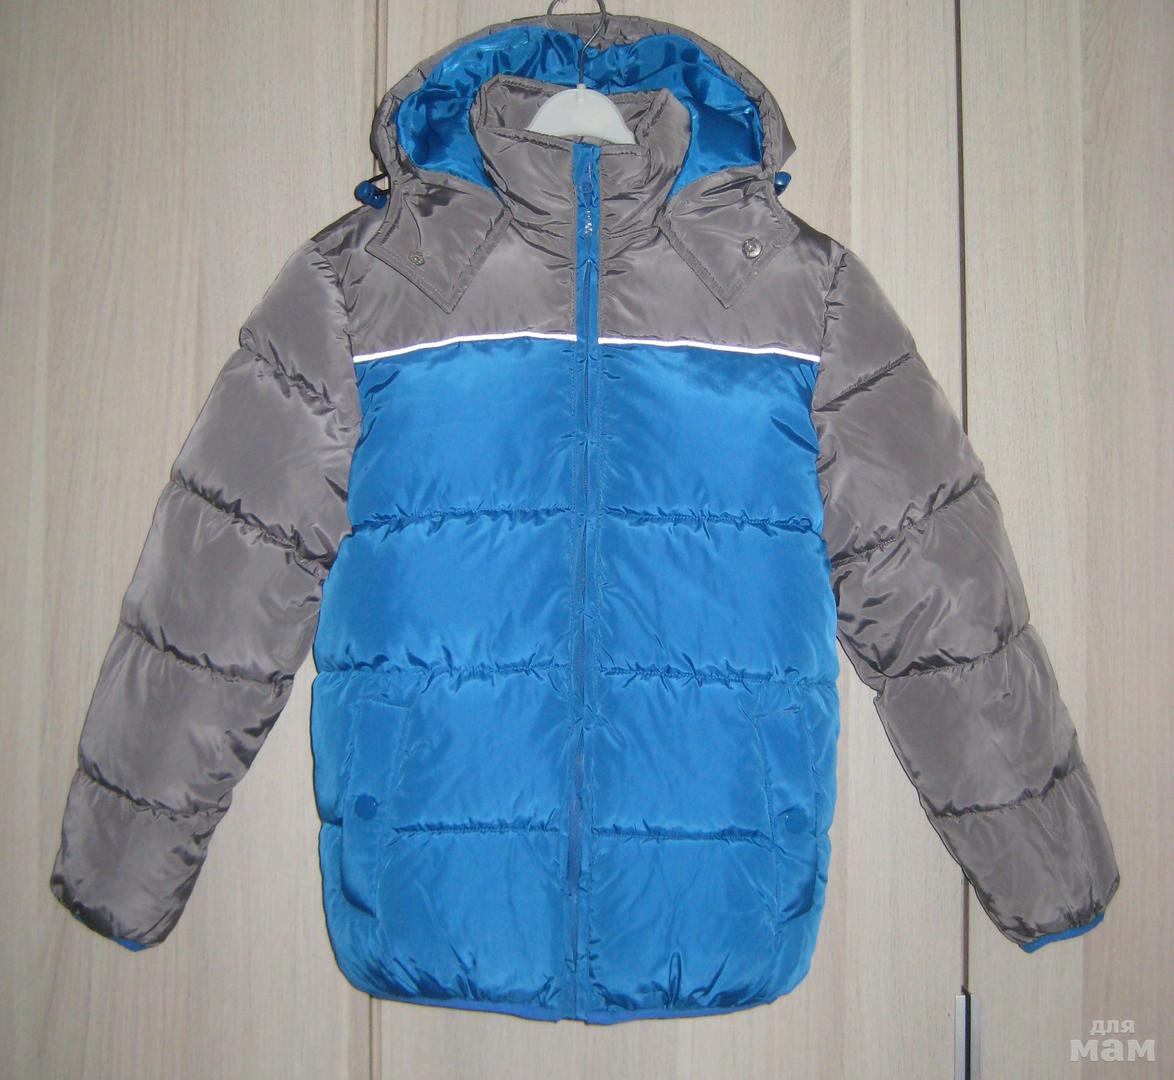 Авито куртка 140. Tech teytodit куртка зимняя на мальчика 146 см. Куртка зимняя для мальчика 140. Куртка для мальчика зимняя 140 рост. Зимние куртки мальчики 146 рост.